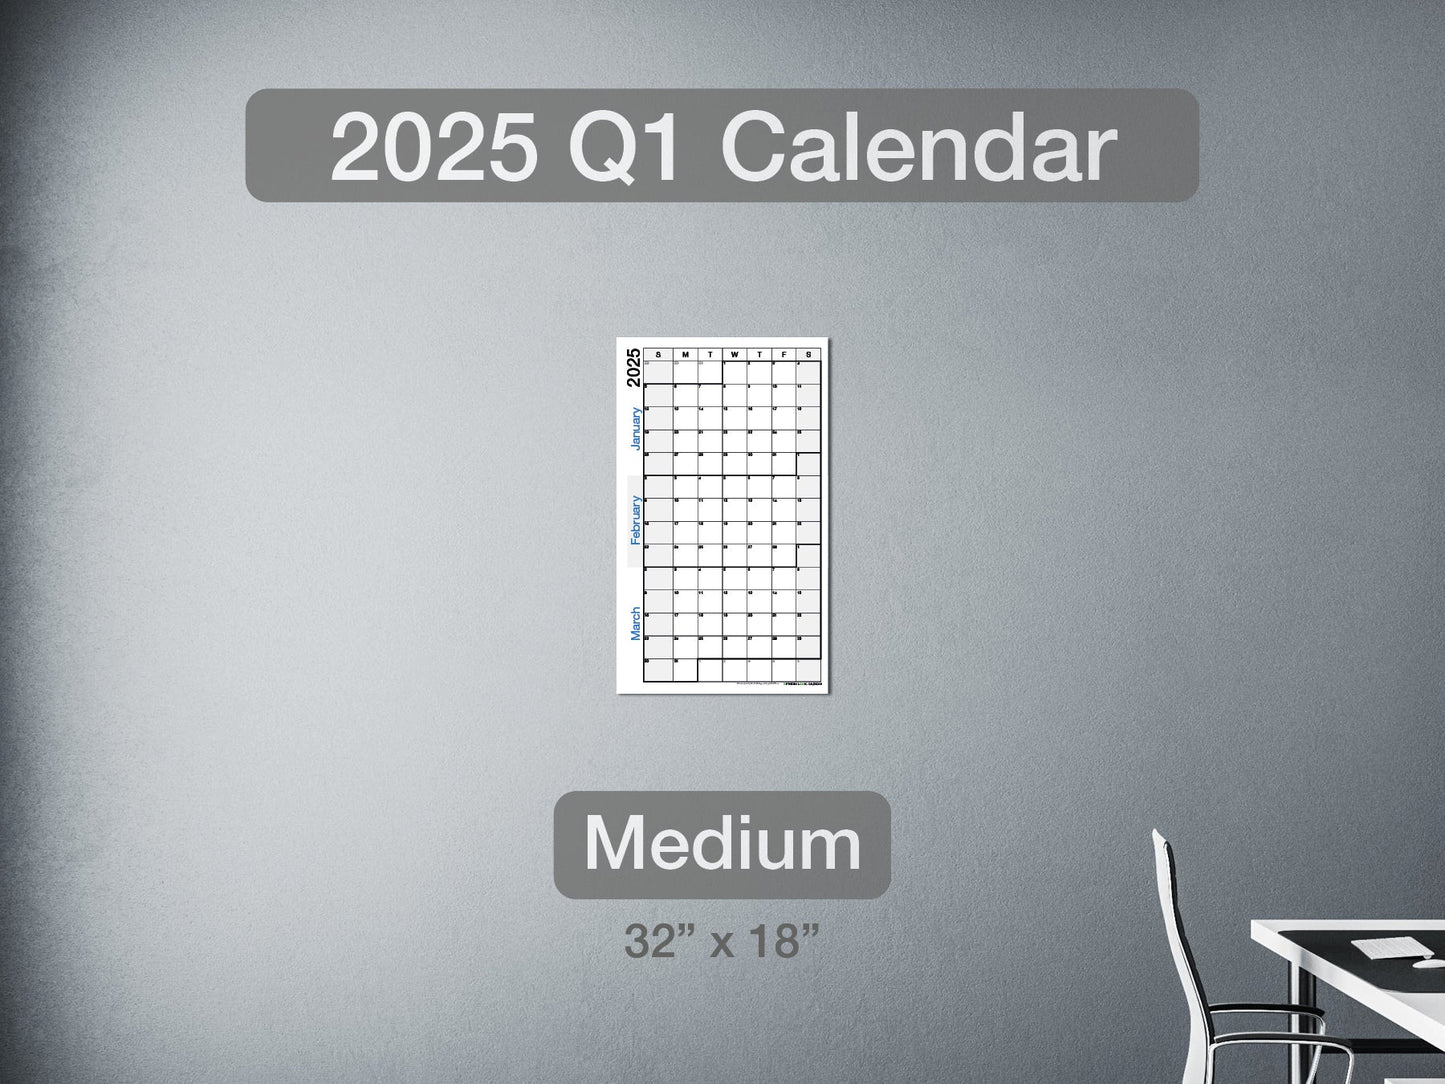 2025 Q1 Calendar Medium